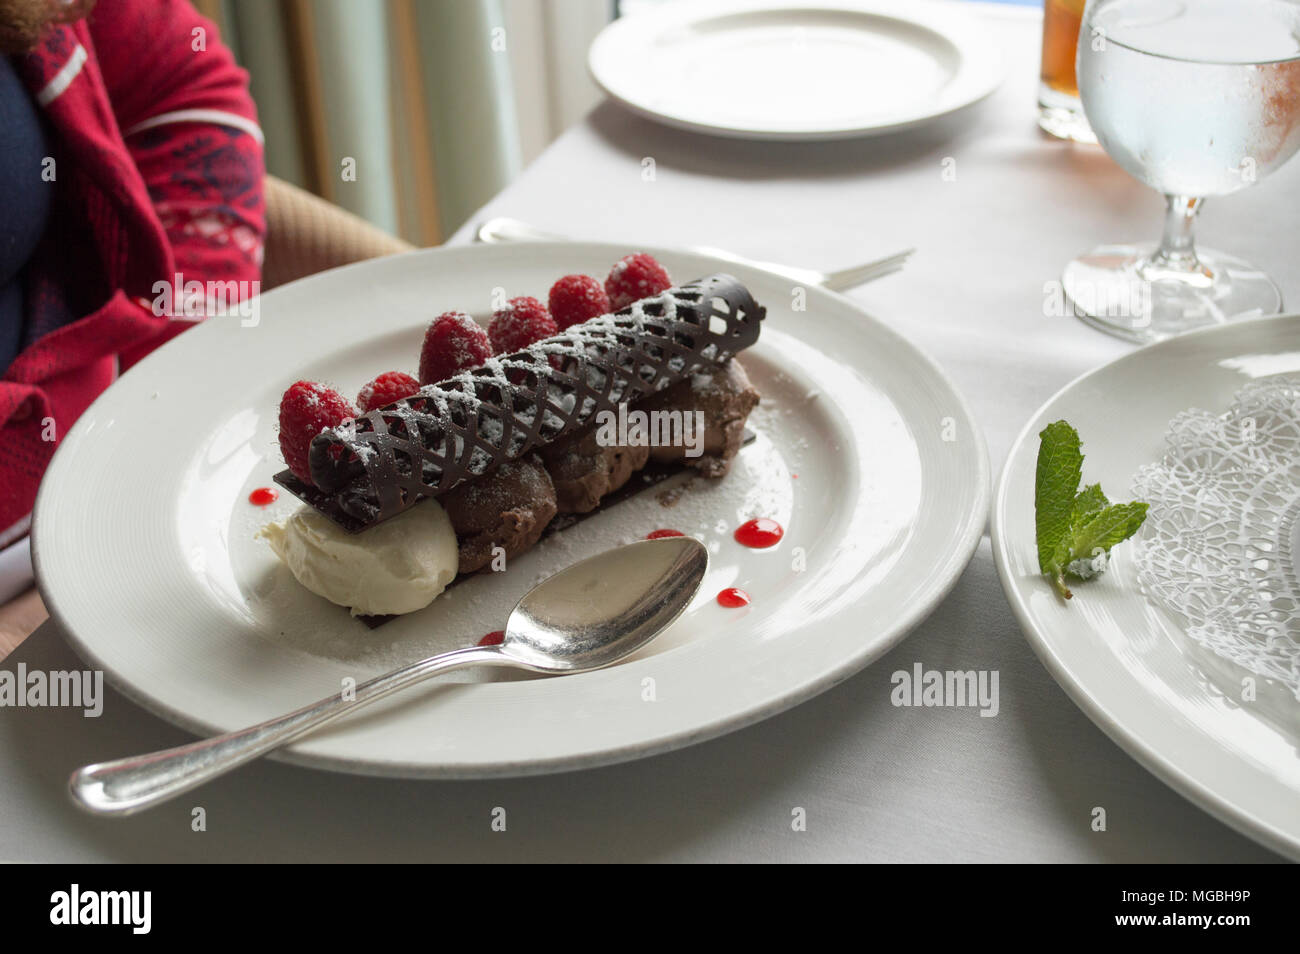 Die gourmet Chocolate Raspberry Dessert über einem Bett von Schokolade und weiße Schokoladenmousse garniert mit einem kreisförmigen Schokolade Gitter Stockfoto